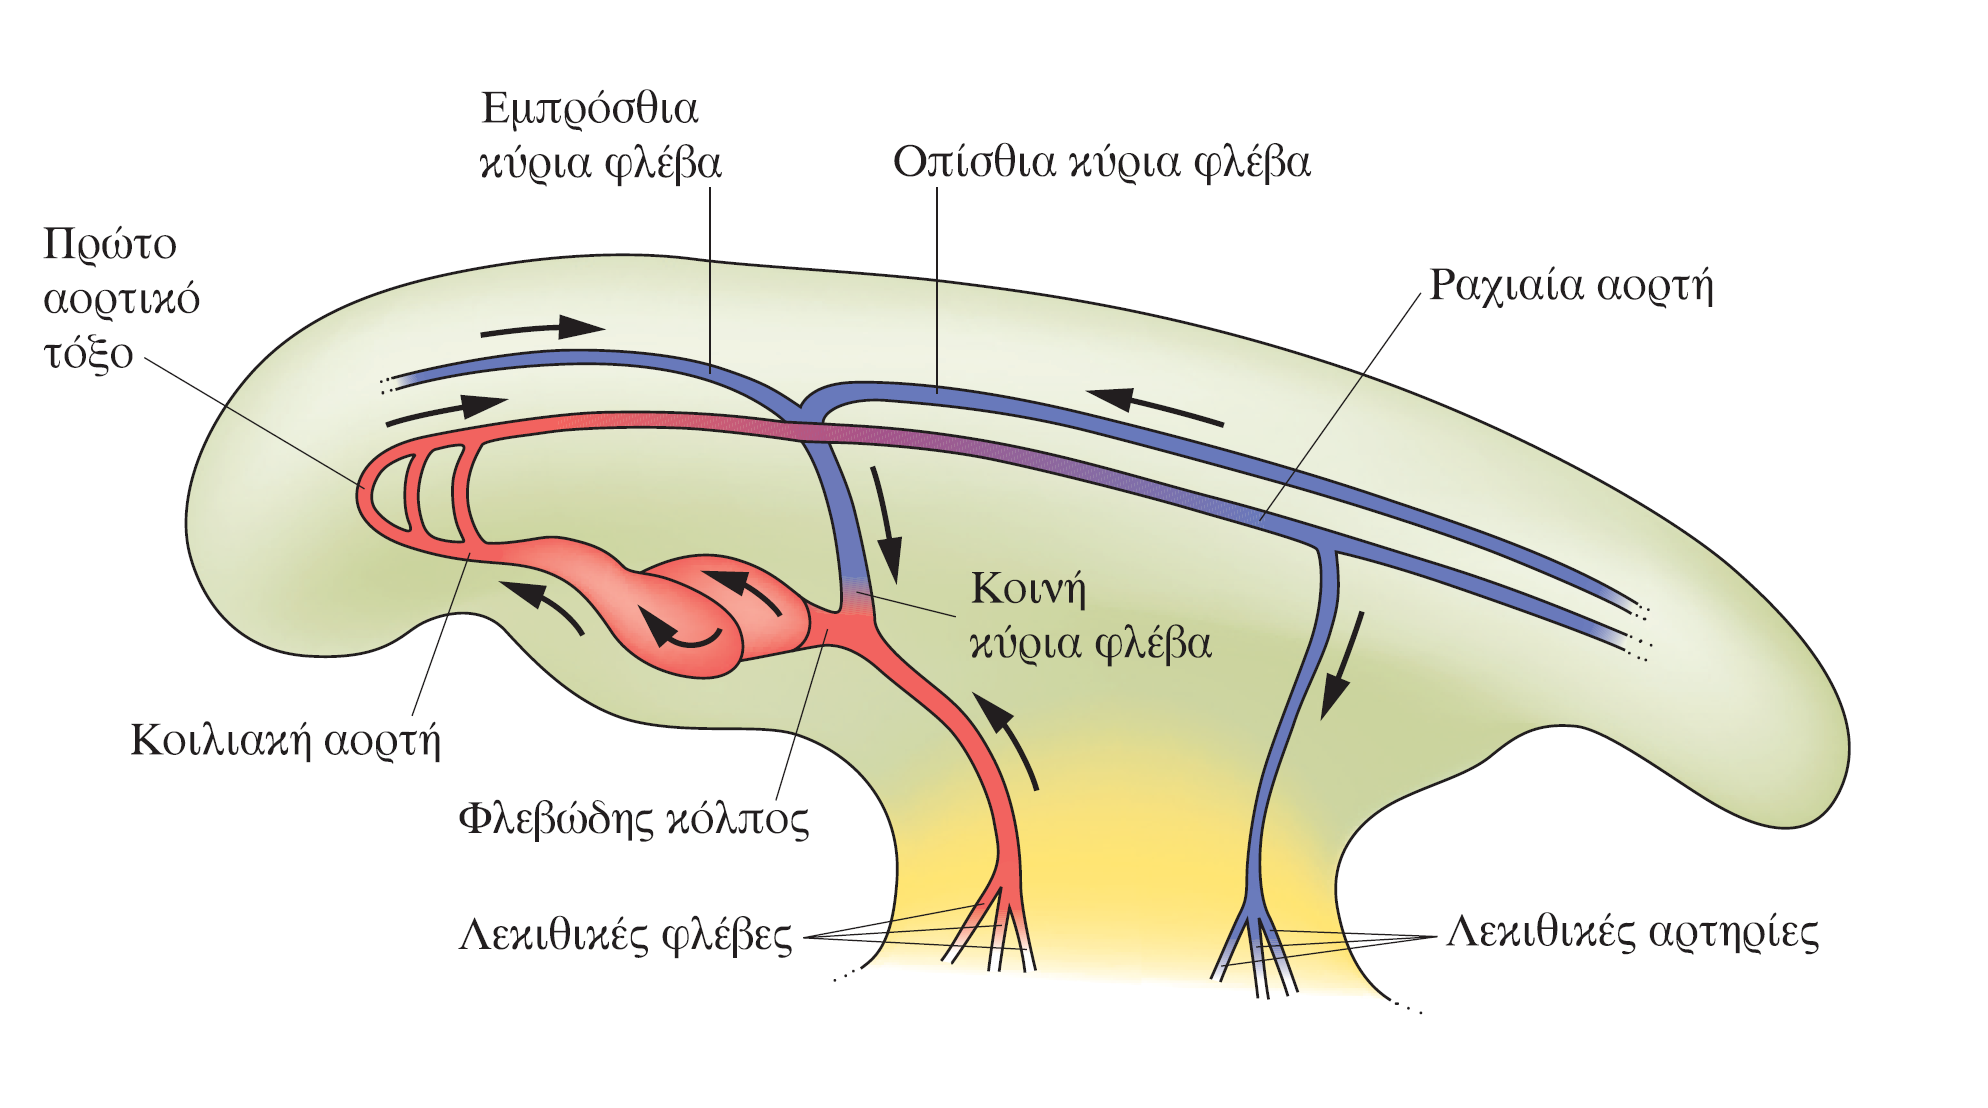 Καρδιά και κυκλοφορία Περιγραφή της οργανογένεσης στο έμβρυο της όρνιθας Η βασική κυκλοφορία ενός